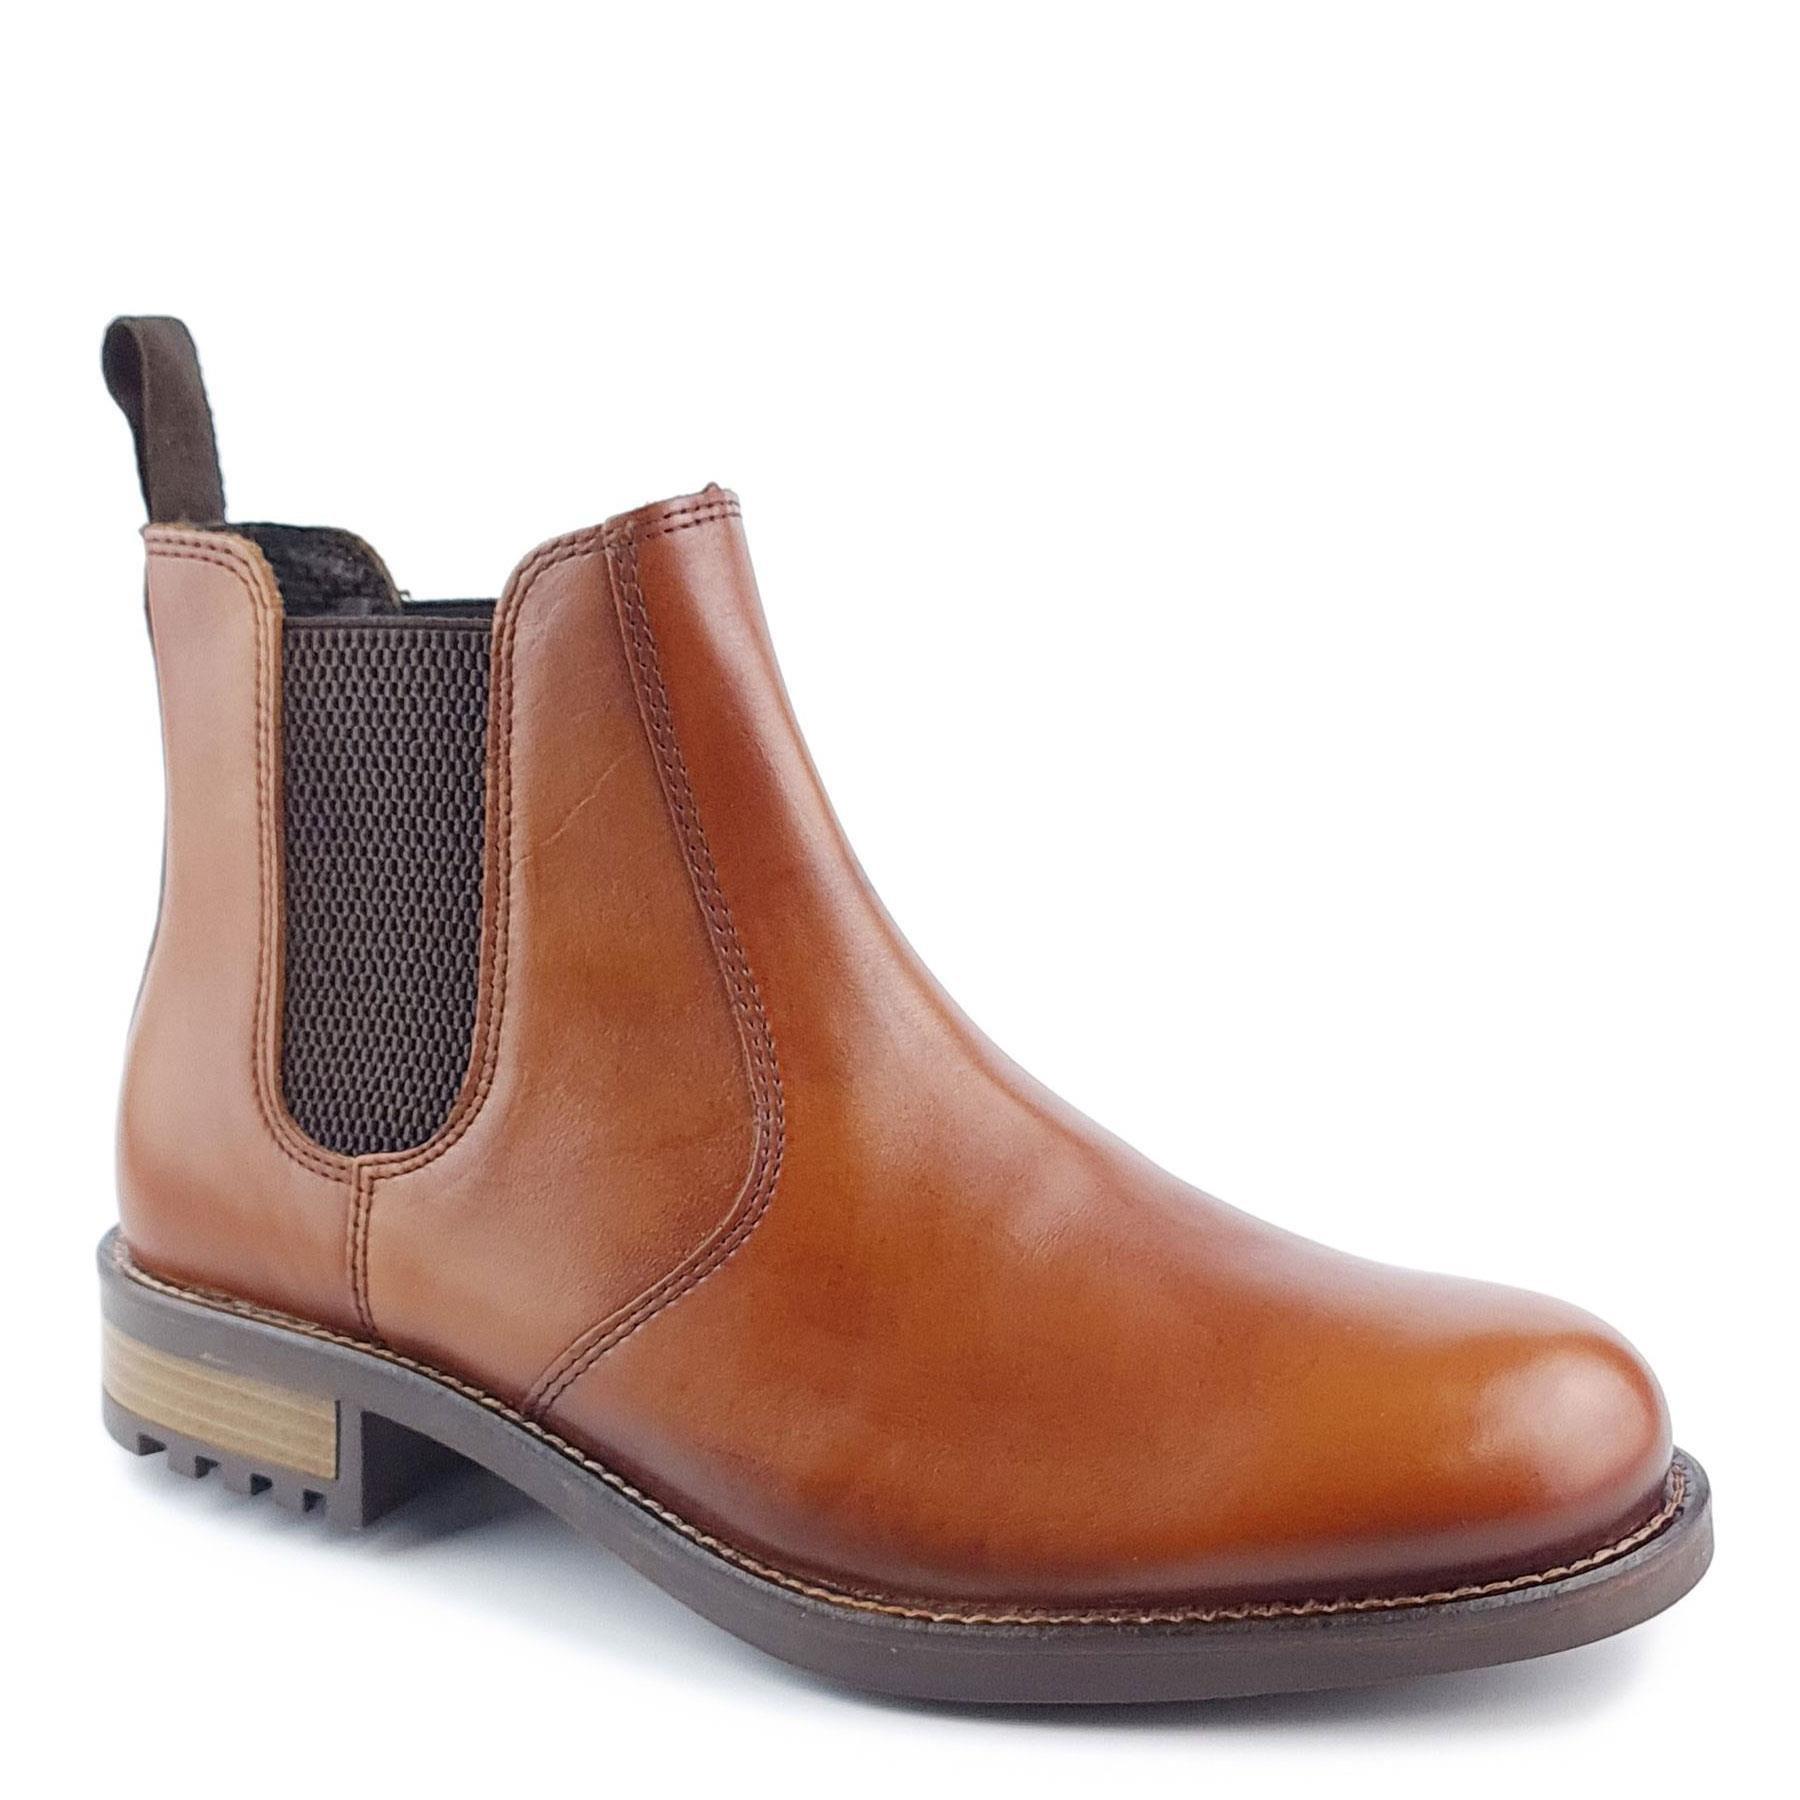 Кожаные ботинки челси Loddington Frank James, коричневый мужские ботинки из пу кожи коричневые ботинки на пуговицах мужские коричневые ботильоны деловые классические ботинки резная обувь модн